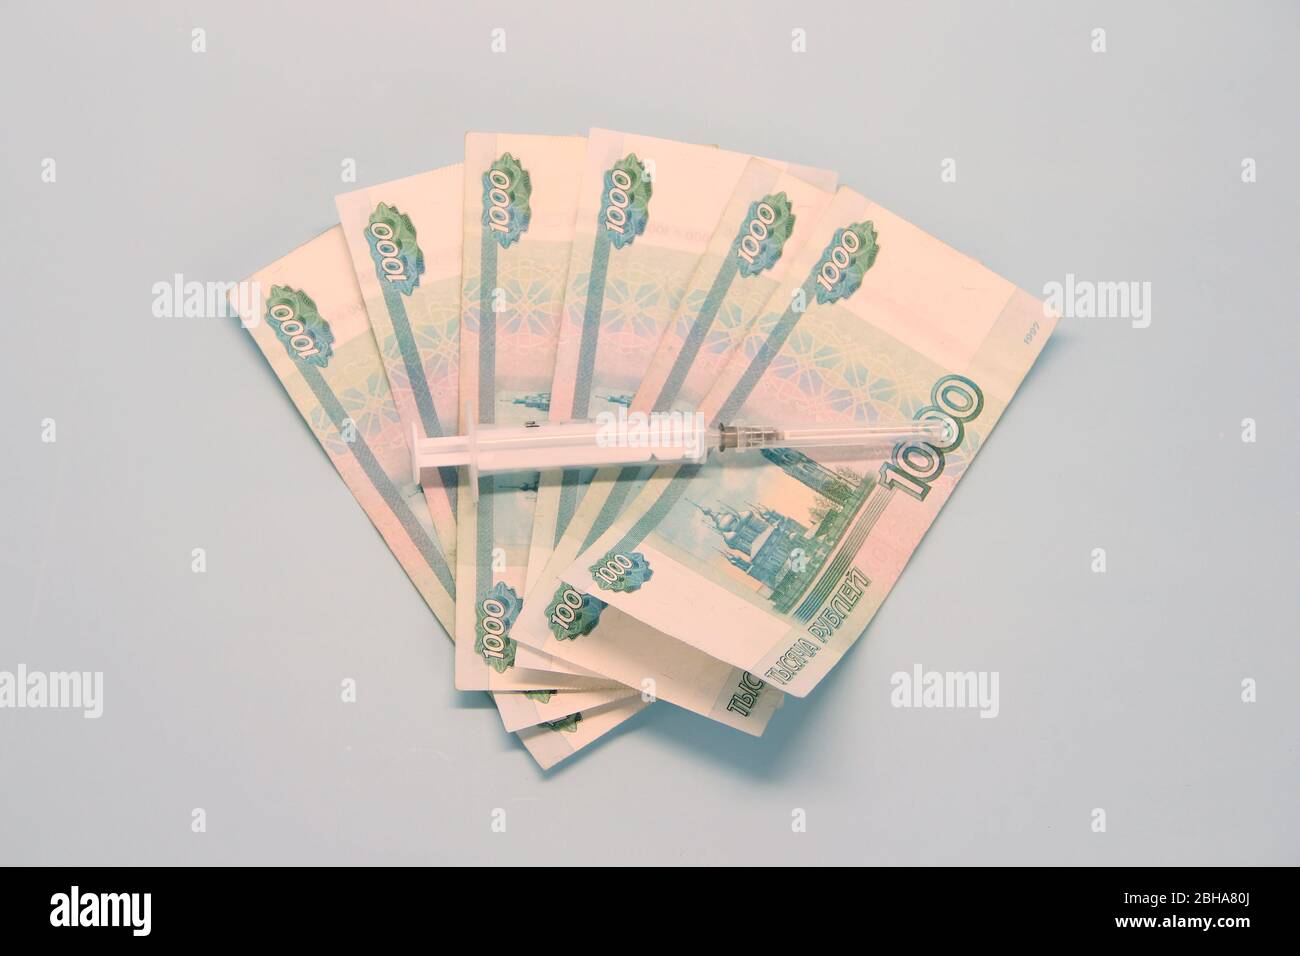 Billetes de papel moneda rusos de mil rublos denominados en un fan. Termómetro acostado encima. Foto de stock